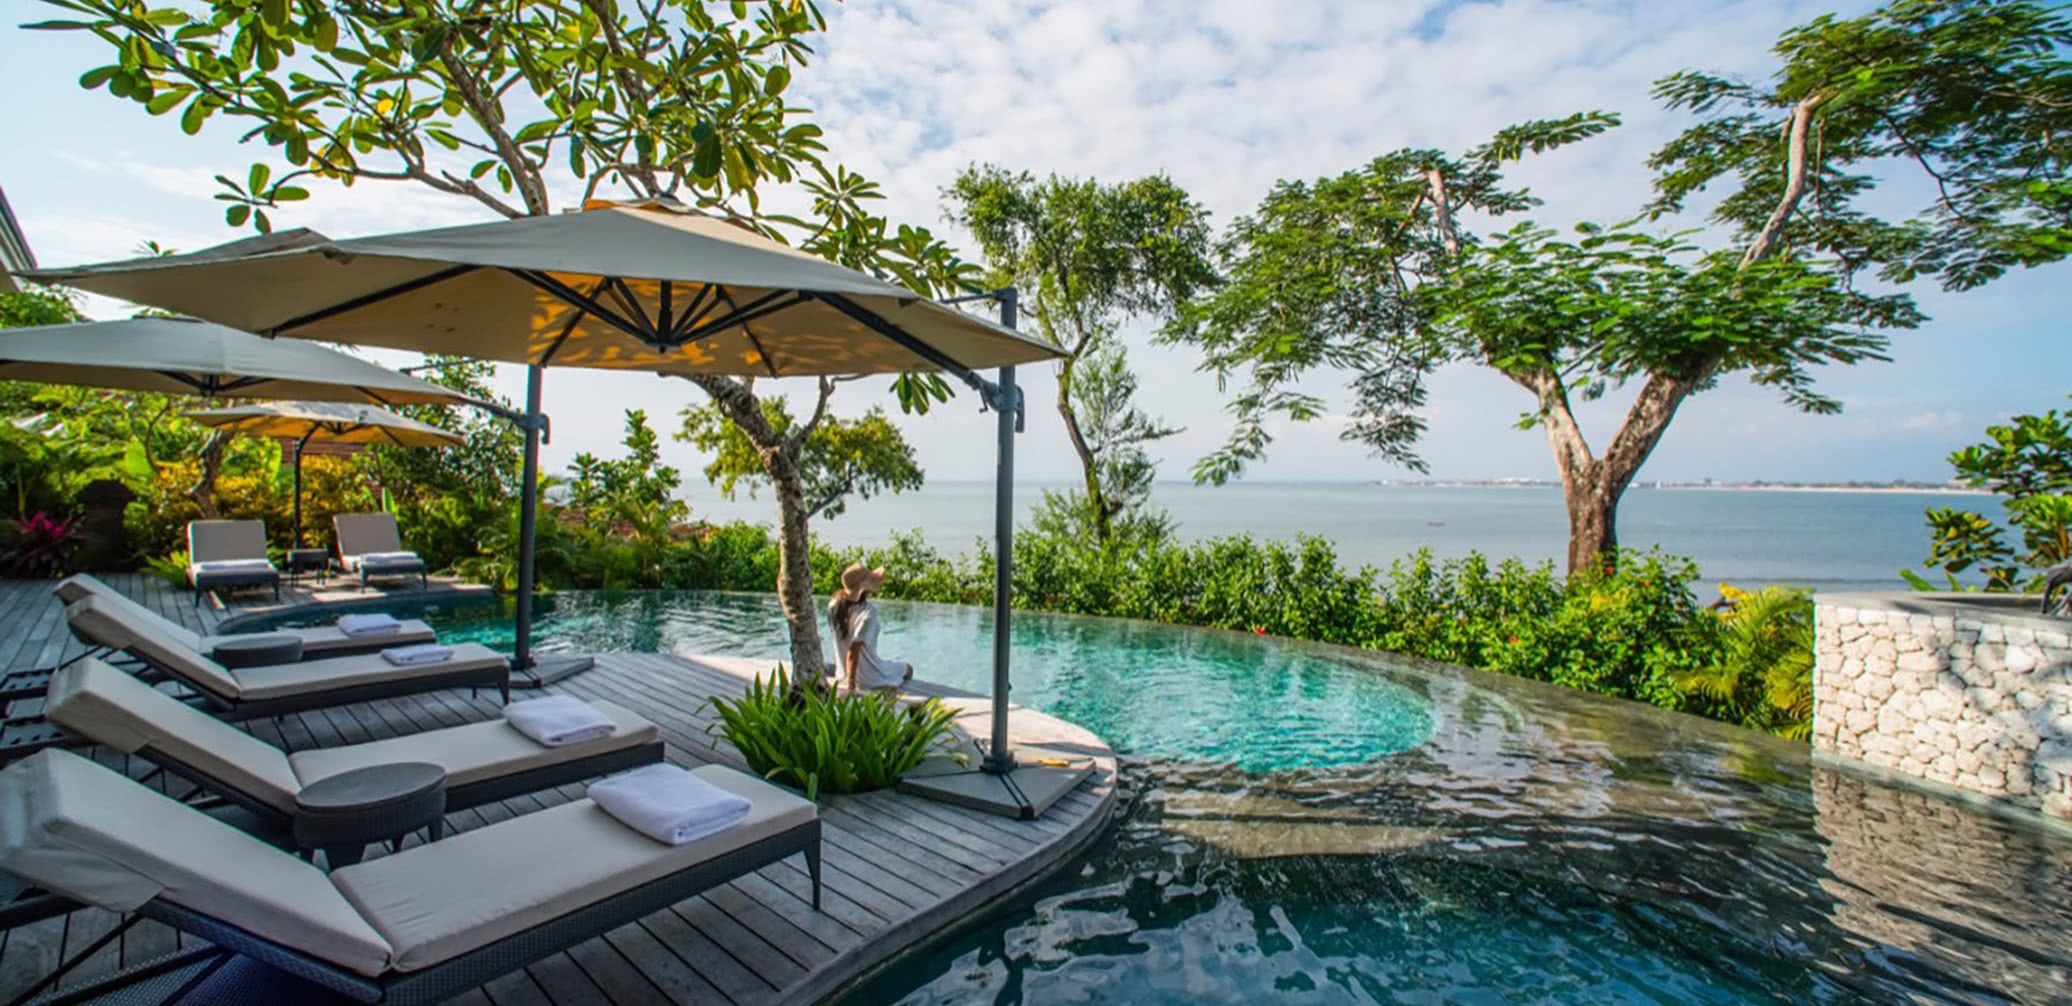 Best Luxury Hotels in Bali